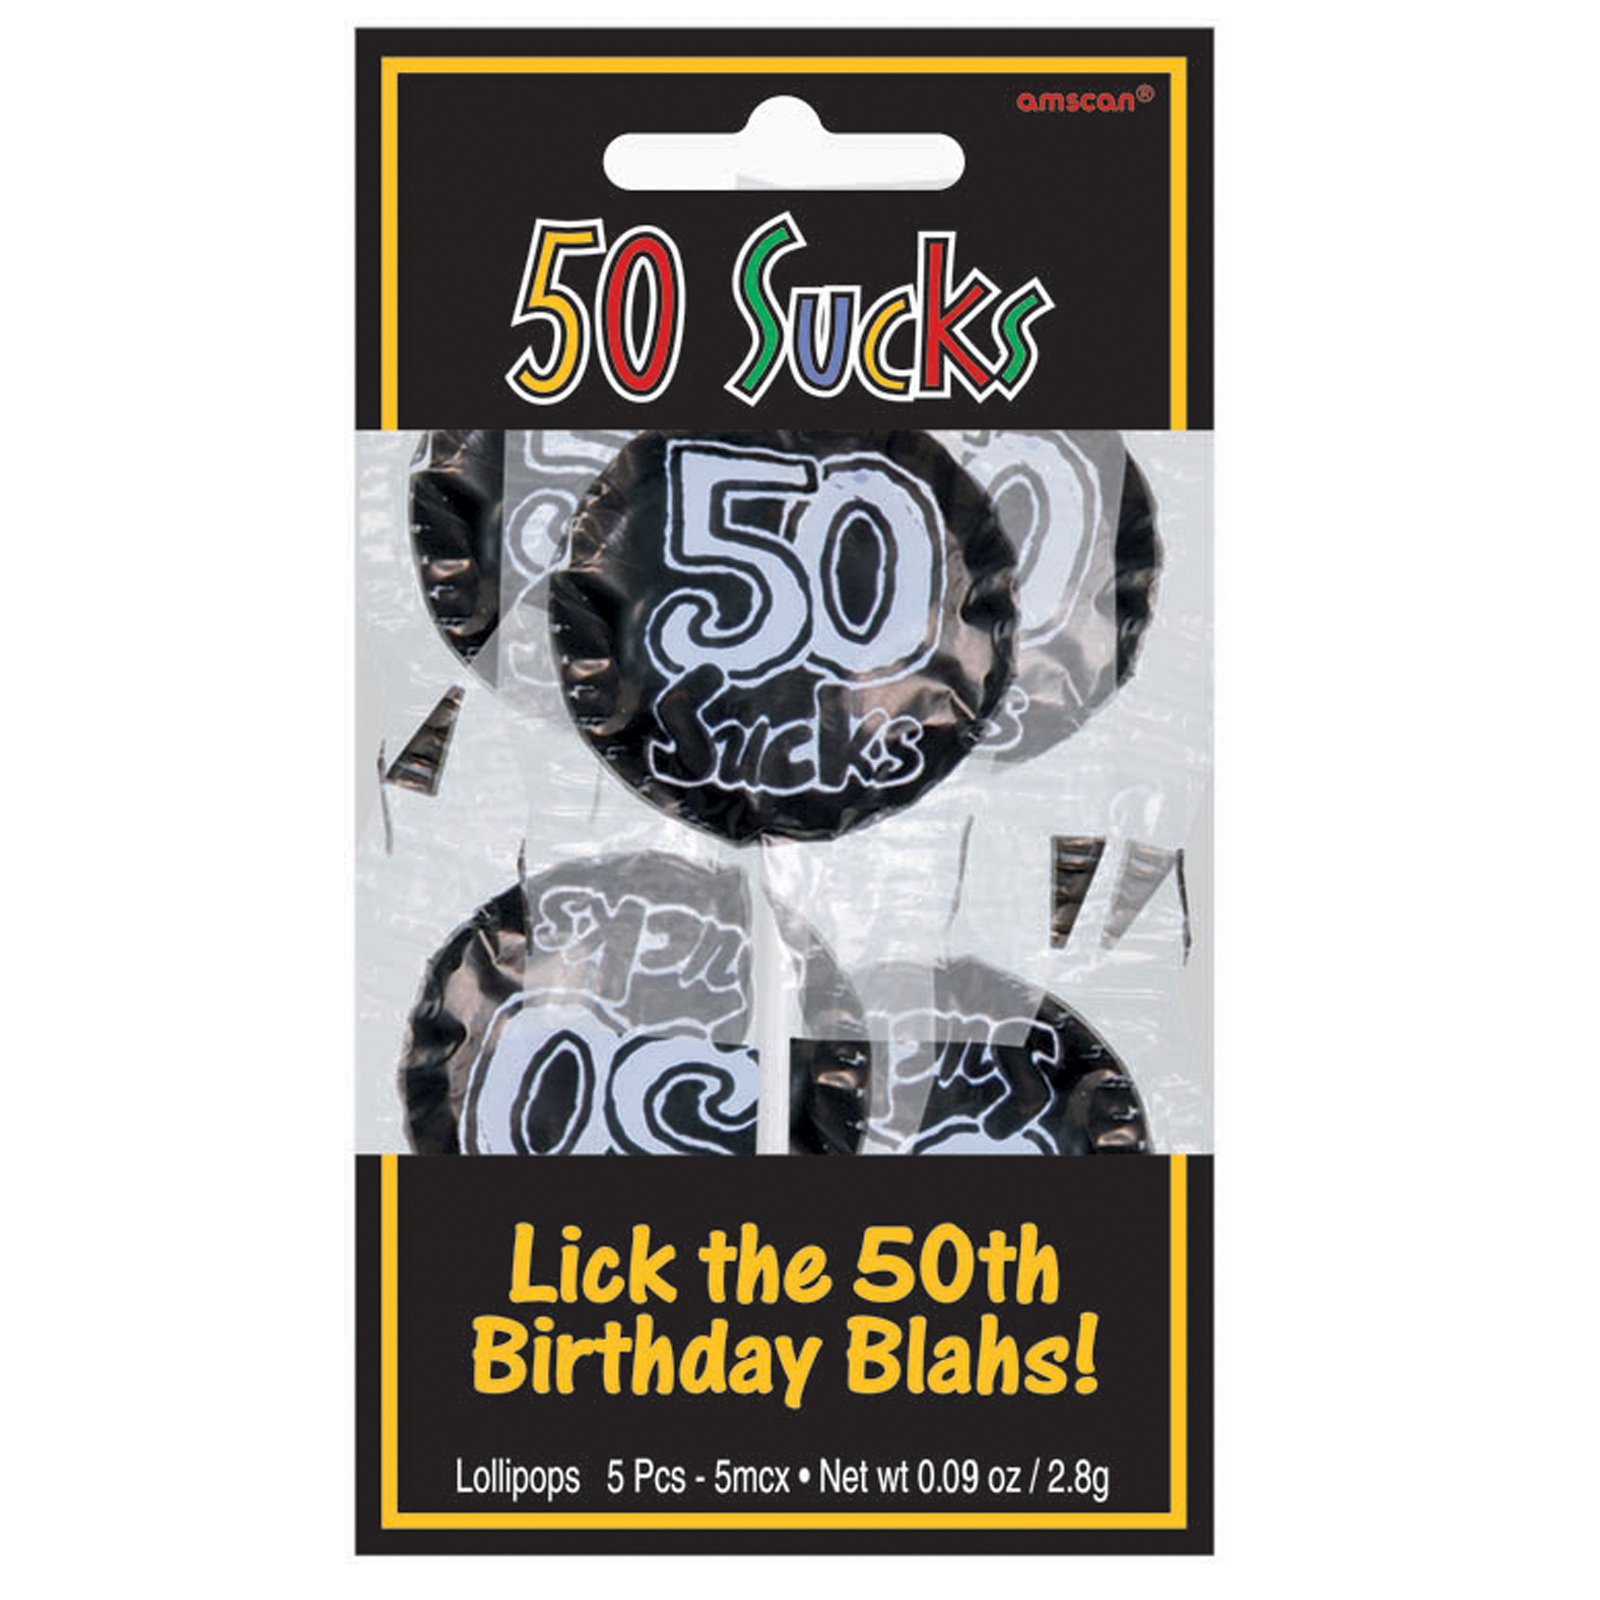 50 Sucks Lollipops (5 count)